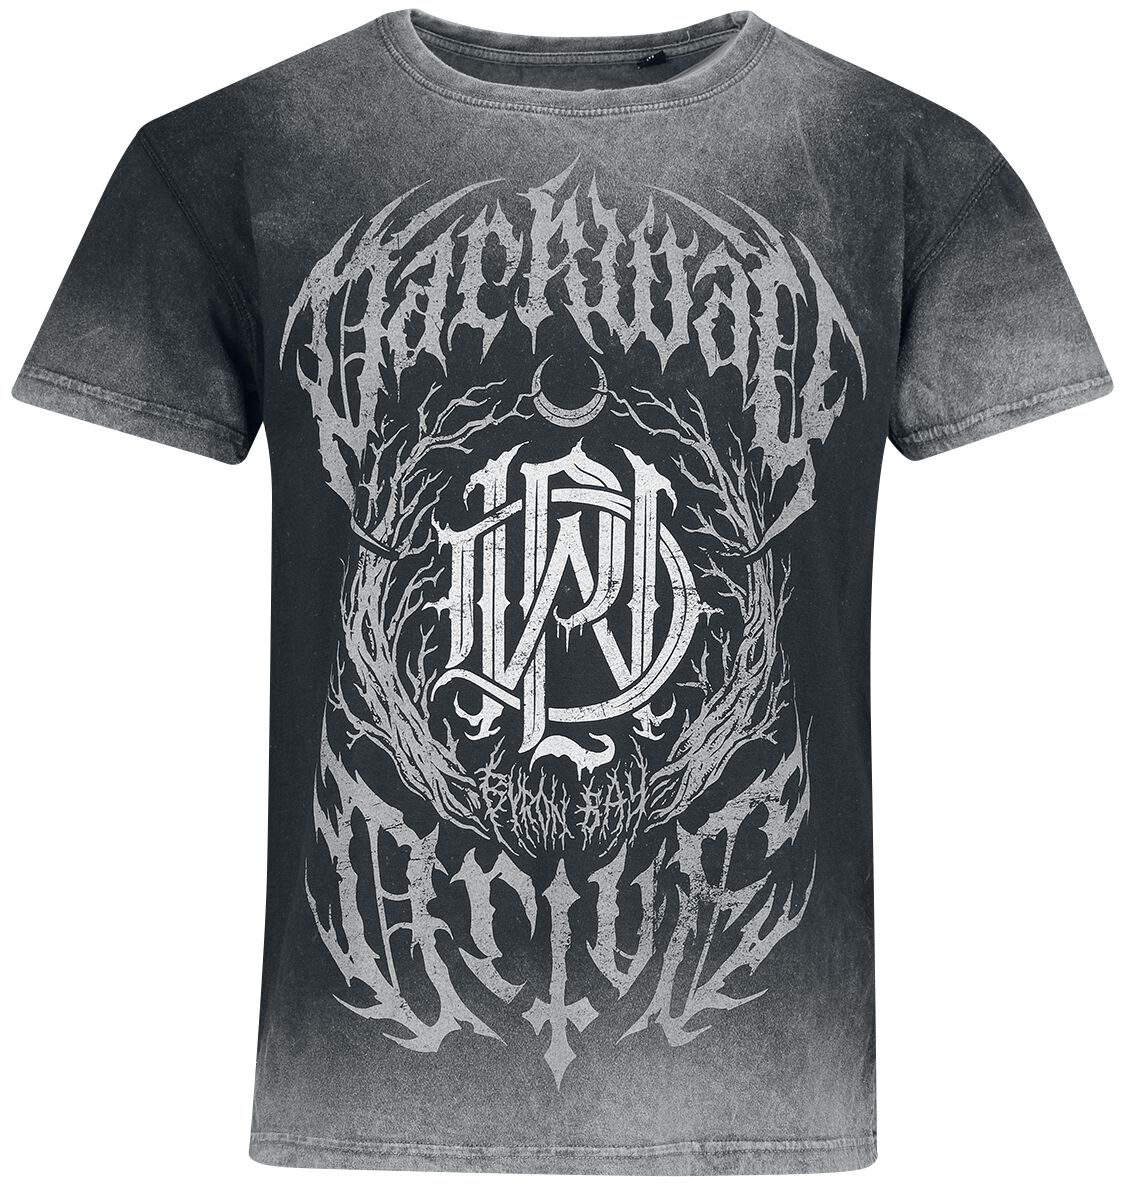 Parkway Drive T-Shirt - Metal Crest - S bis XXL - für Männer - Größe M - dunkelgrau/hellgrau  - Lizenziertes Merchandise!